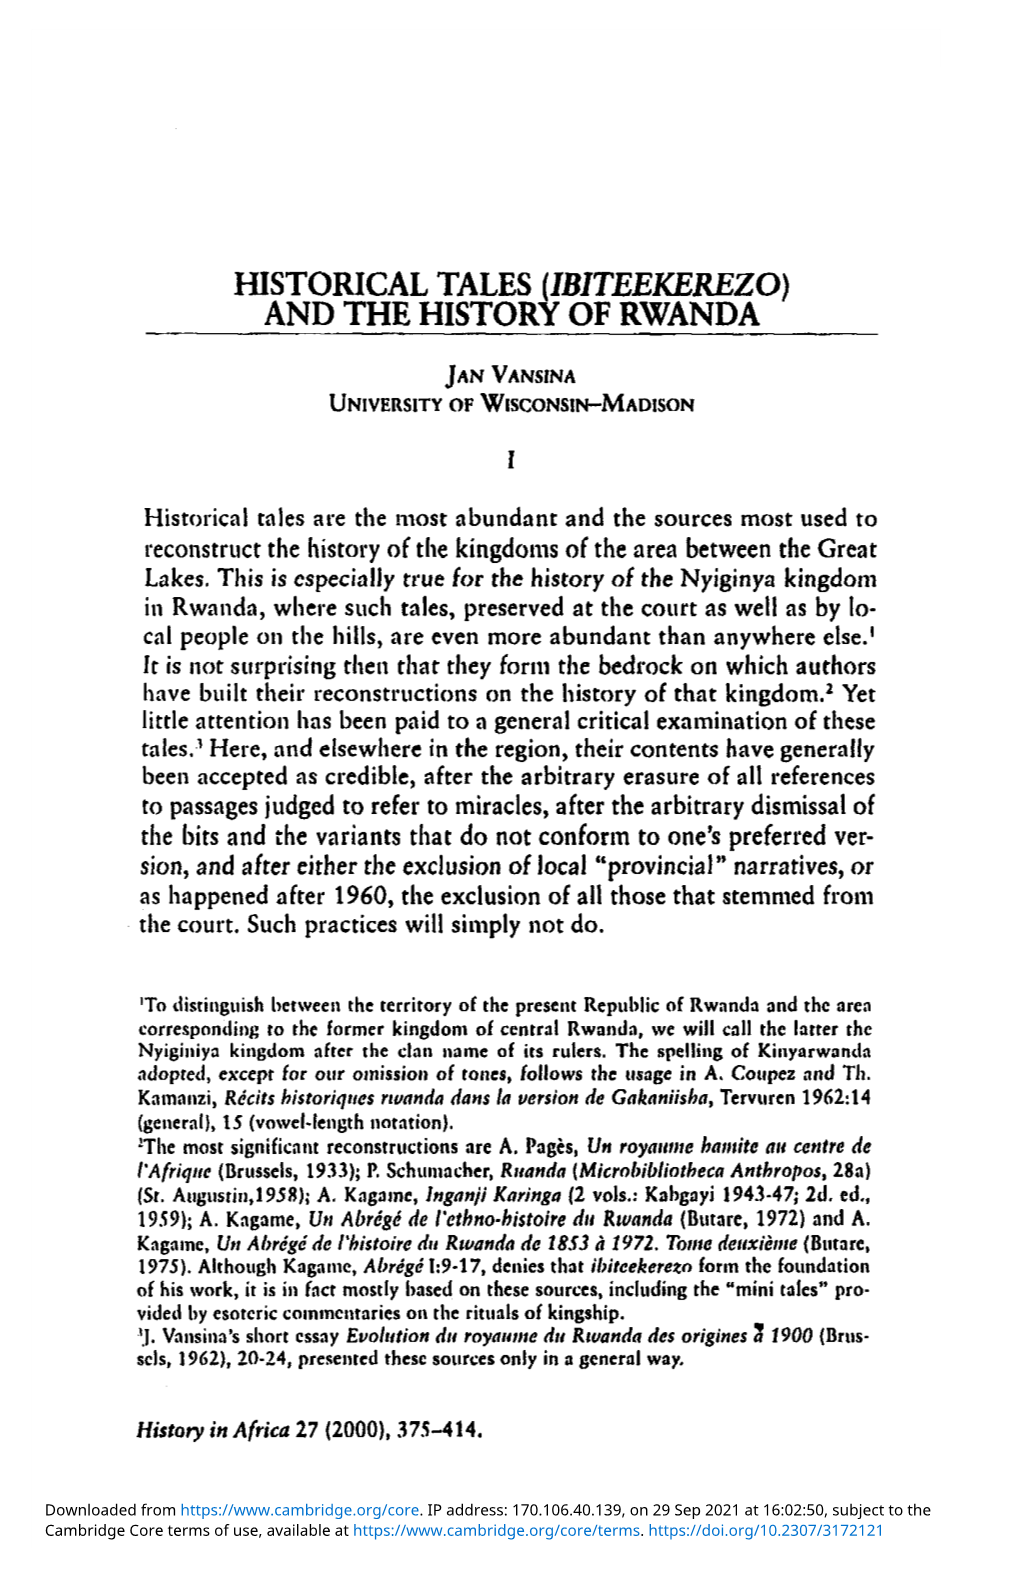 (Ibiteekerezo) and the History of Rwanda